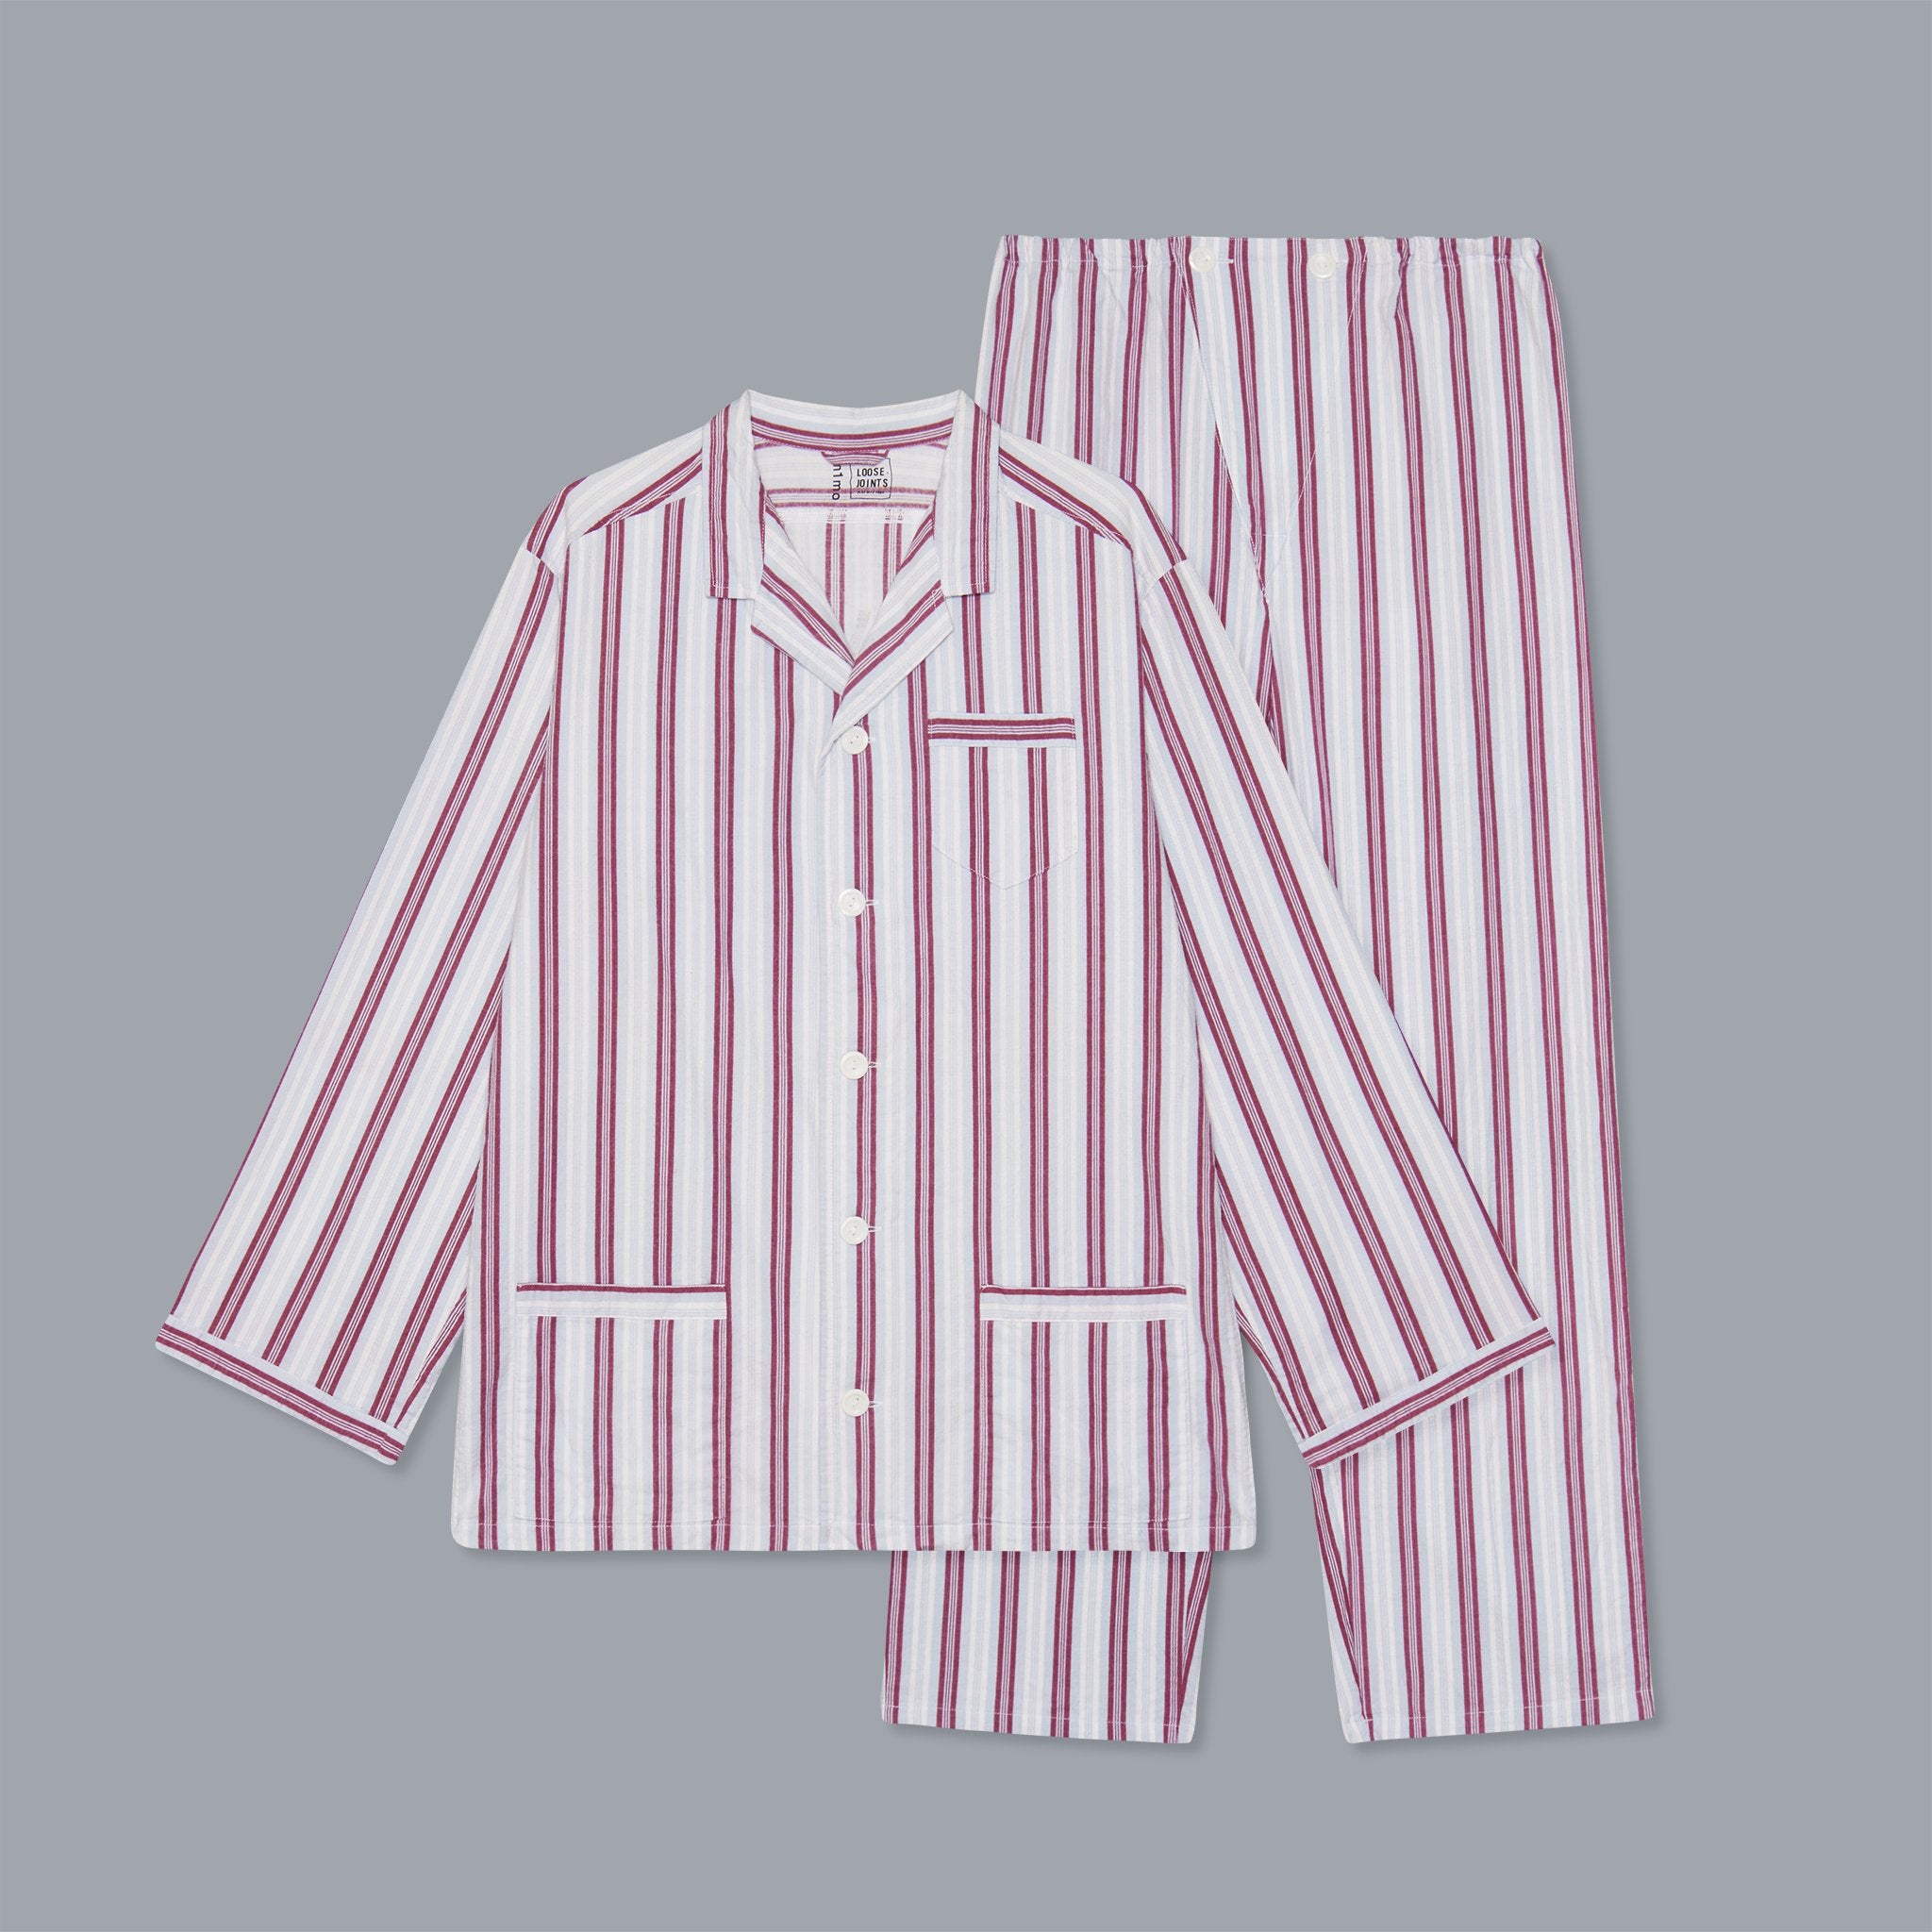 loosejoints & m1mo - TOMOO GOKITA - 'LA VIDA' vintage pyjamas